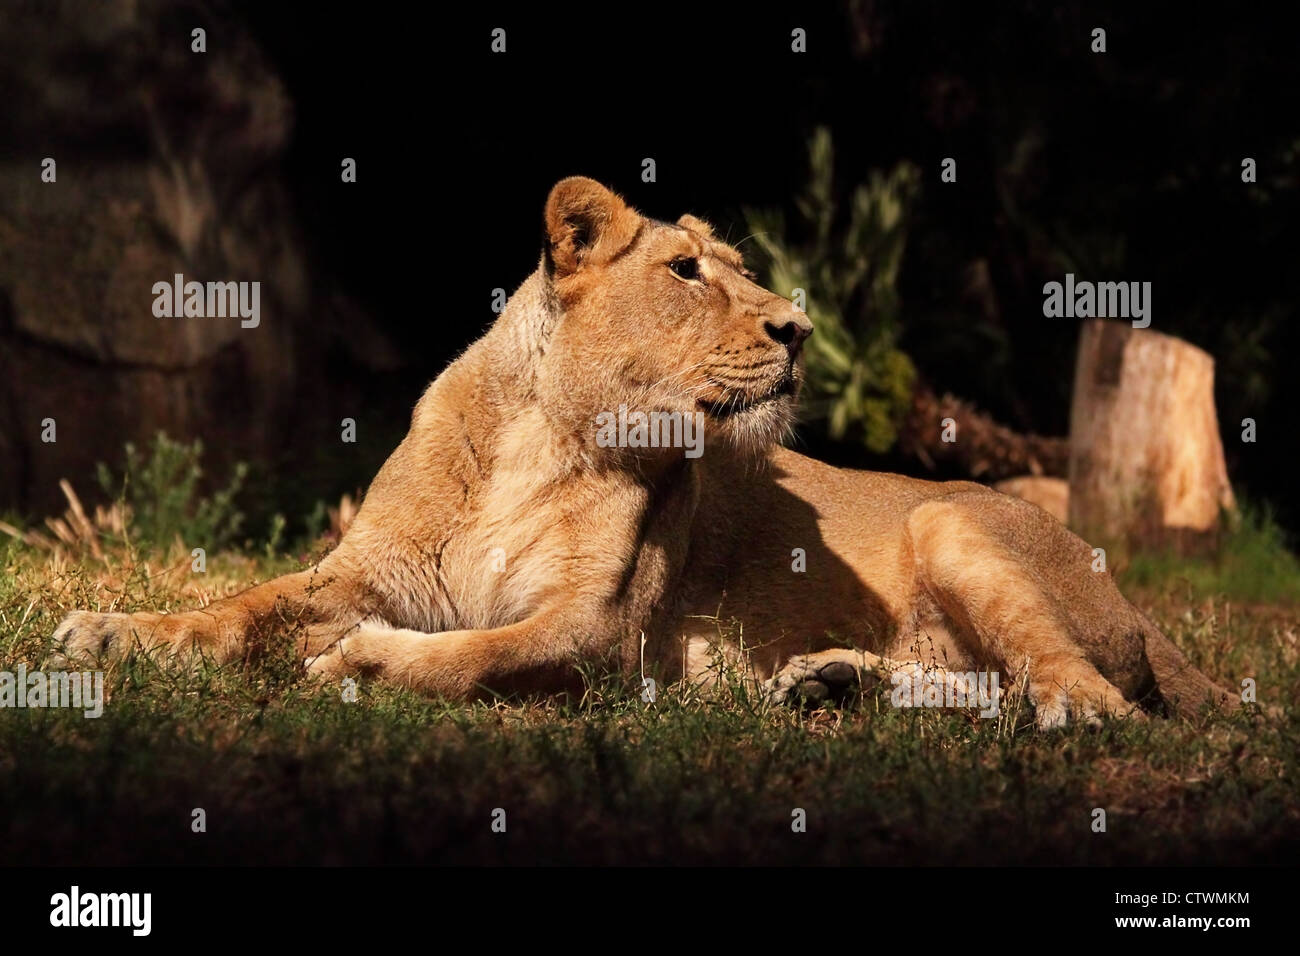 Una leona (Pantera Leo) mentir está descansando, mirando alrededor Foto de stock